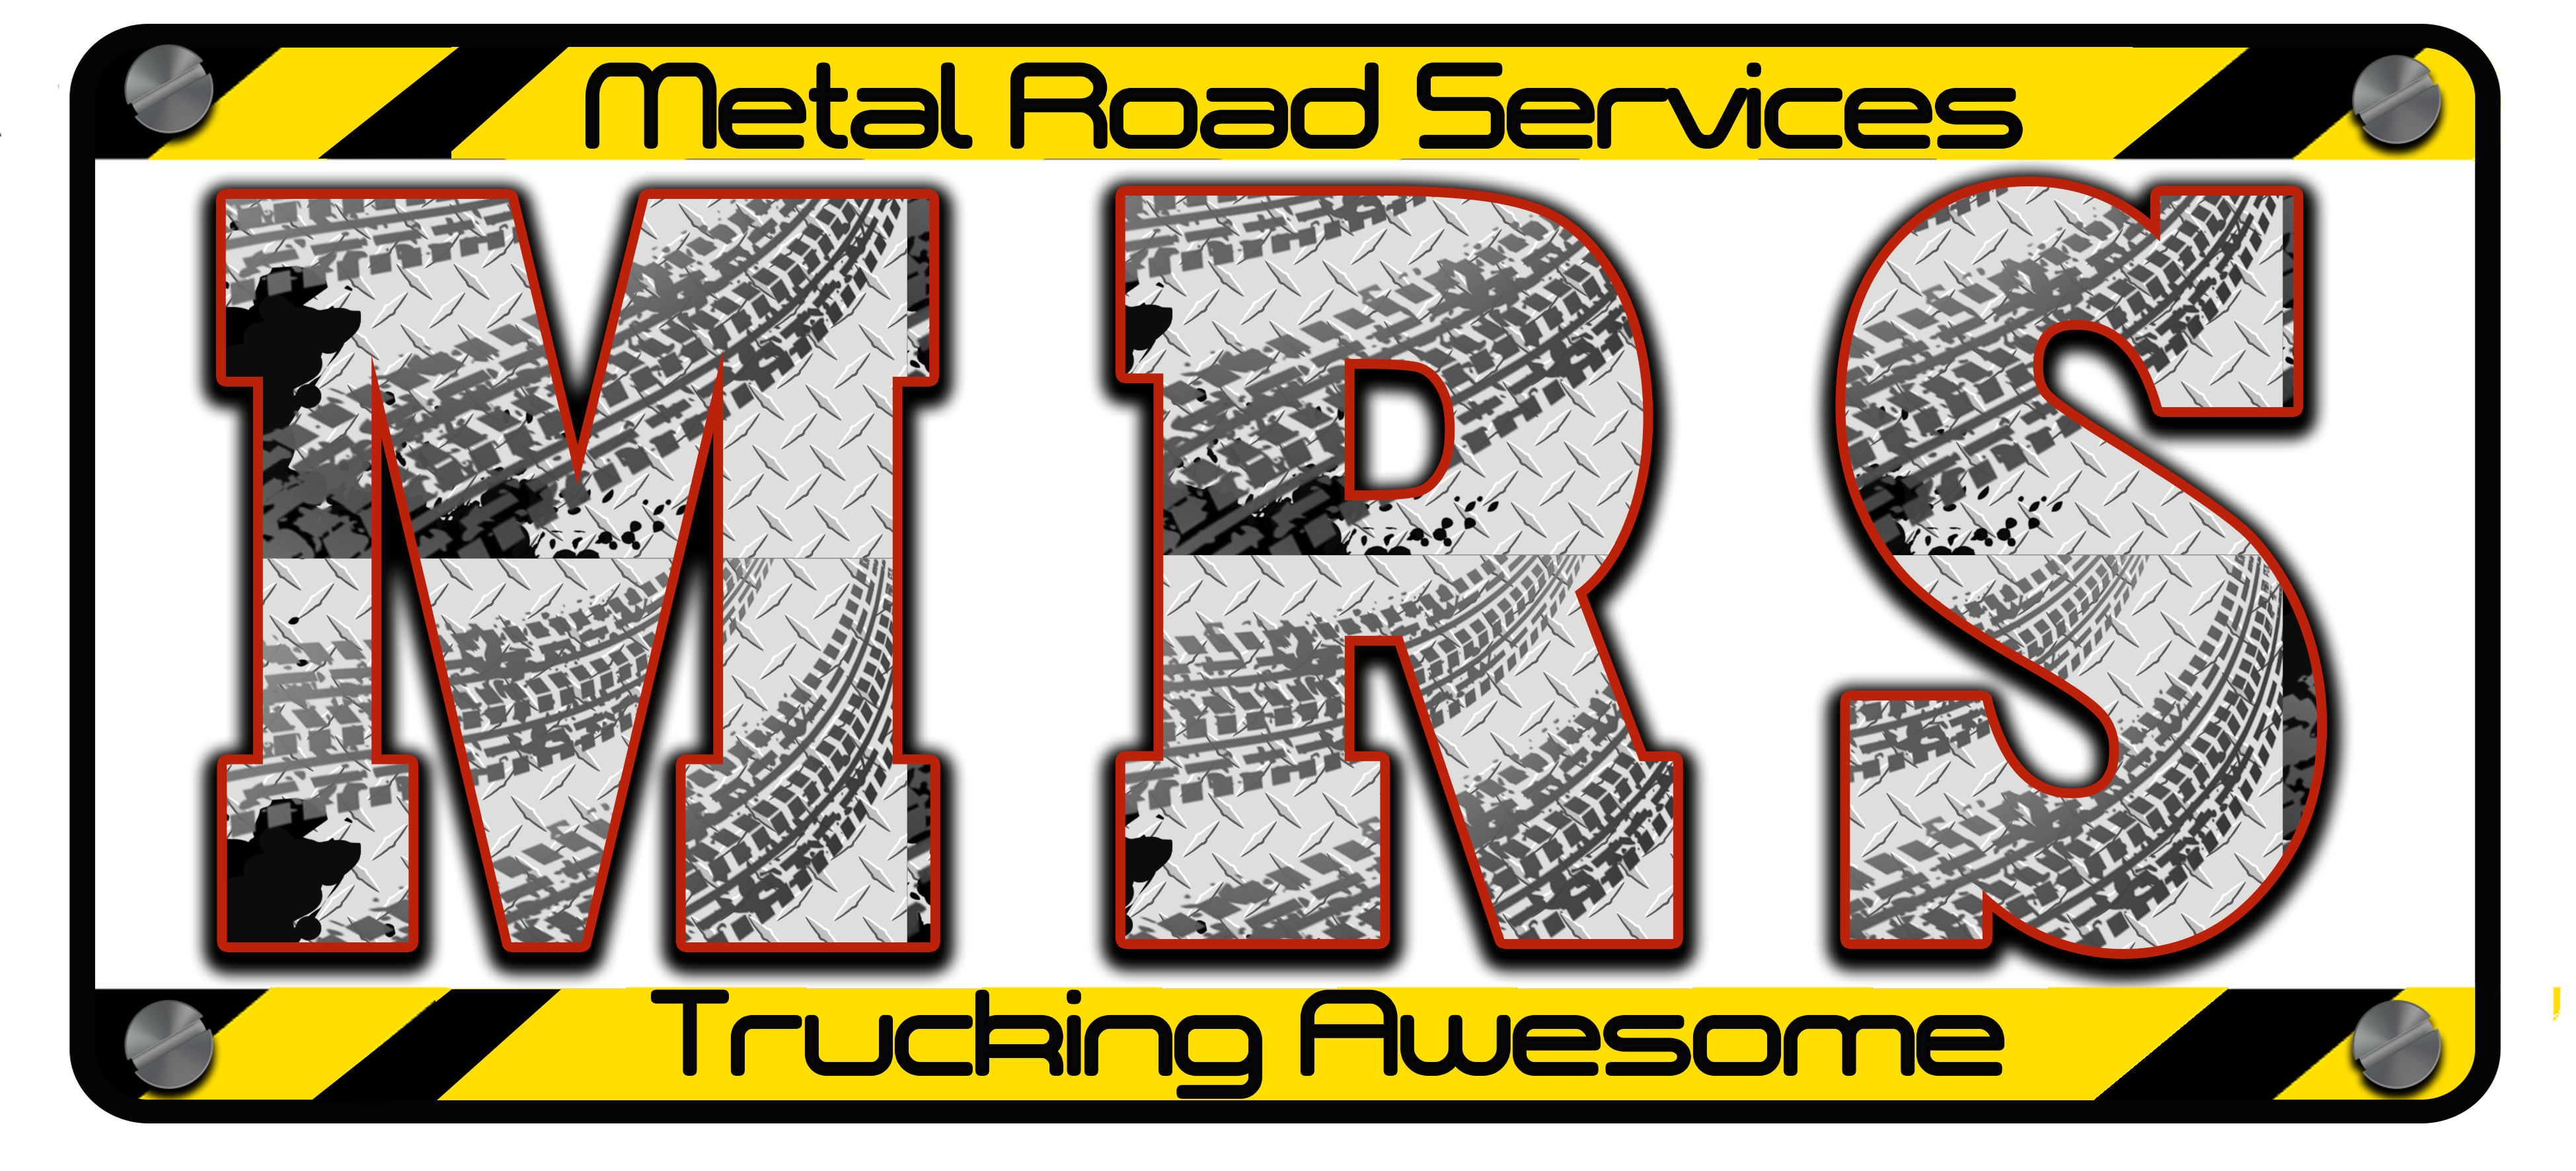 Metal Road Services cc